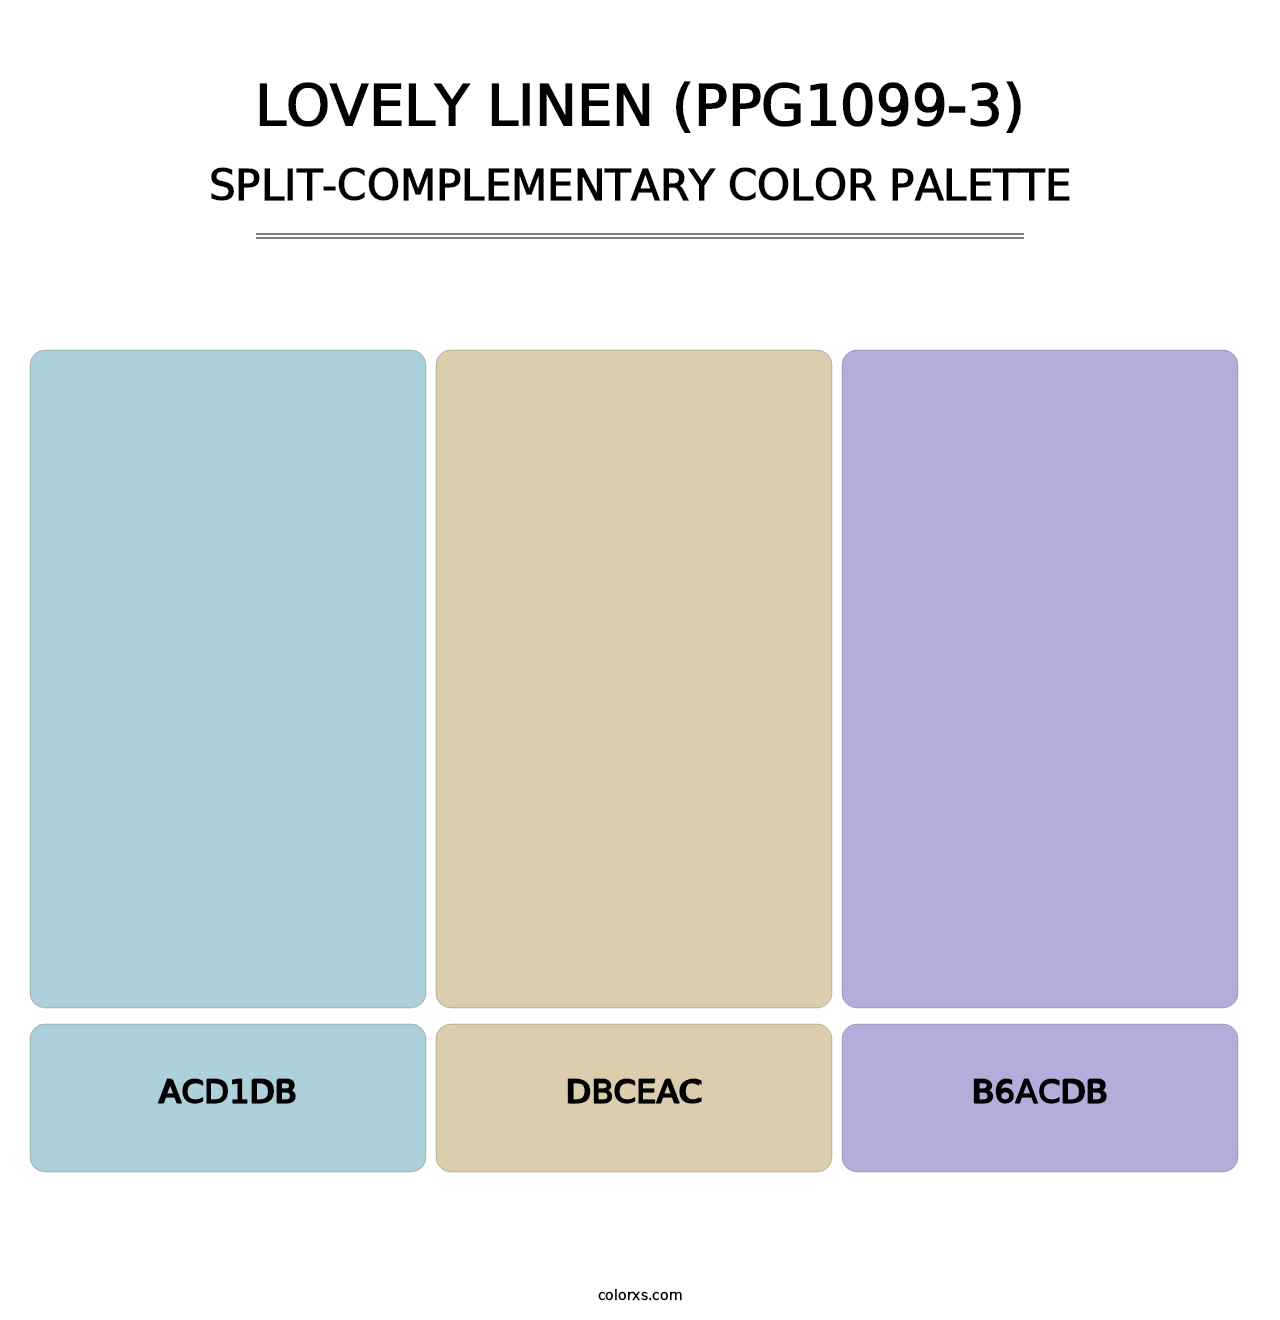 Lovely Linen (PPG1099-3) - Split-Complementary Color Palette